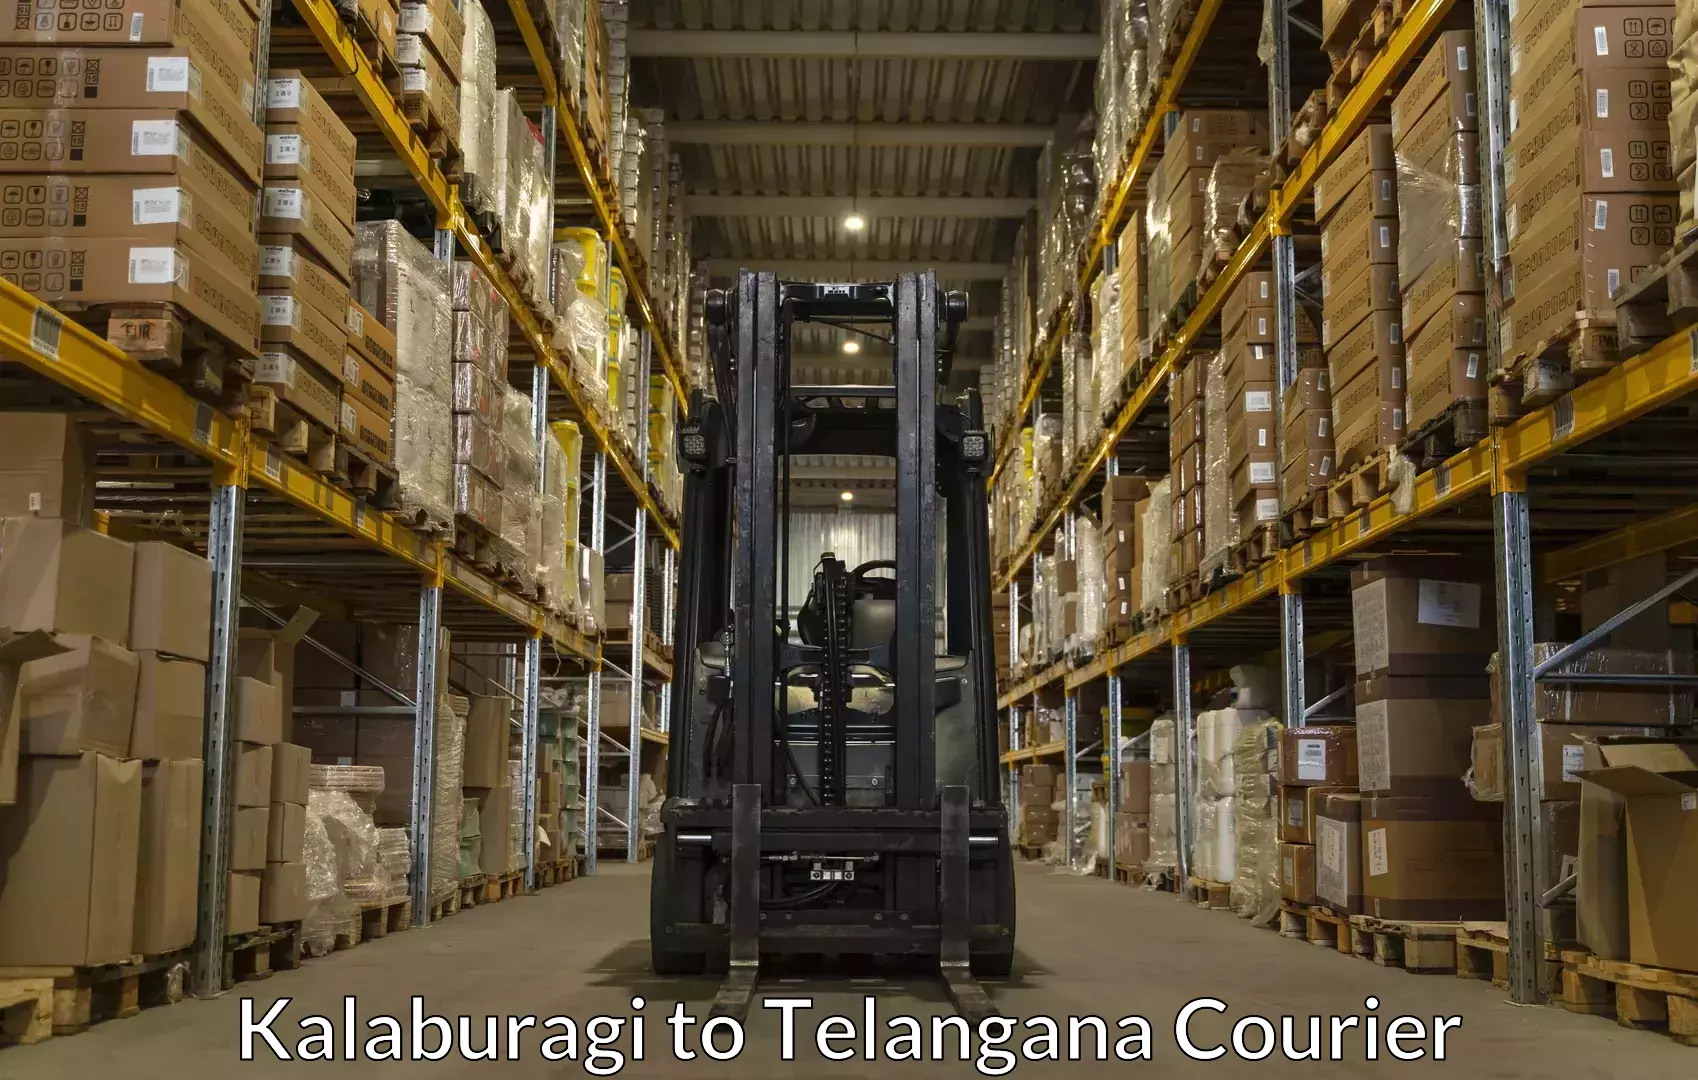 Luggage shipment tracking Kalaburagi to Makthal